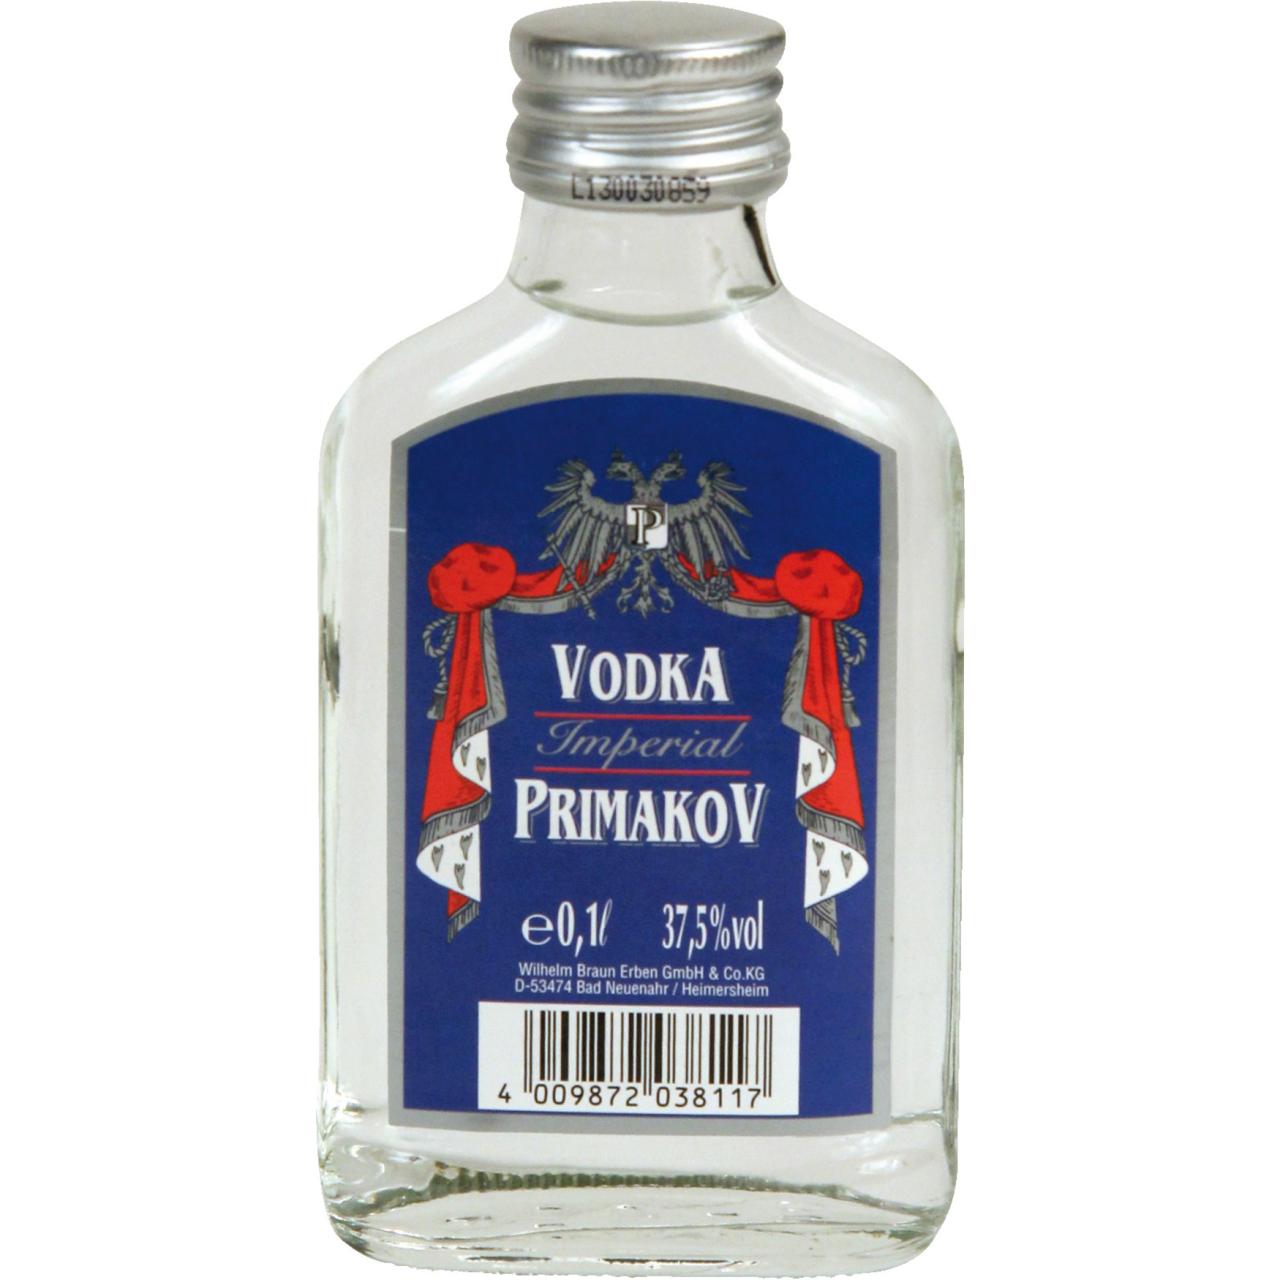 Primakov Vodka 37,5% 0,1l